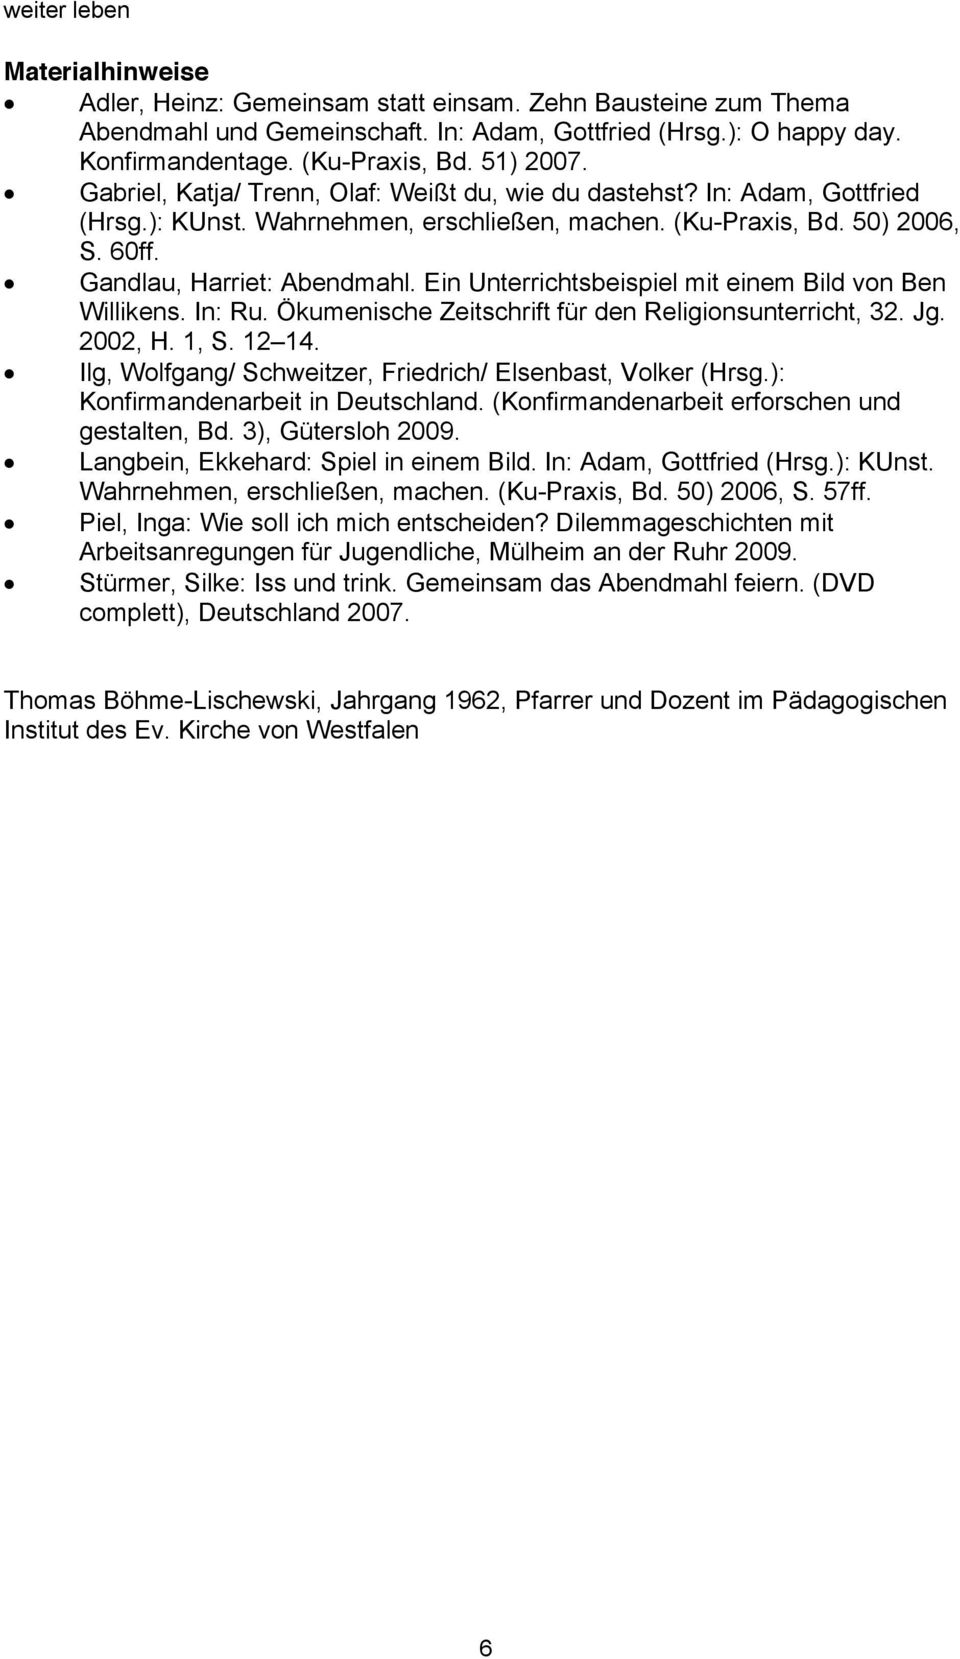 Ein Unterrichtsbeispiel mit einem Bild von Ben Willikens. In: Ru. Ökumenische Zeitschrift für den Religionsunterricht, 32. Jg. 2002, H. 1, S. 12 14.